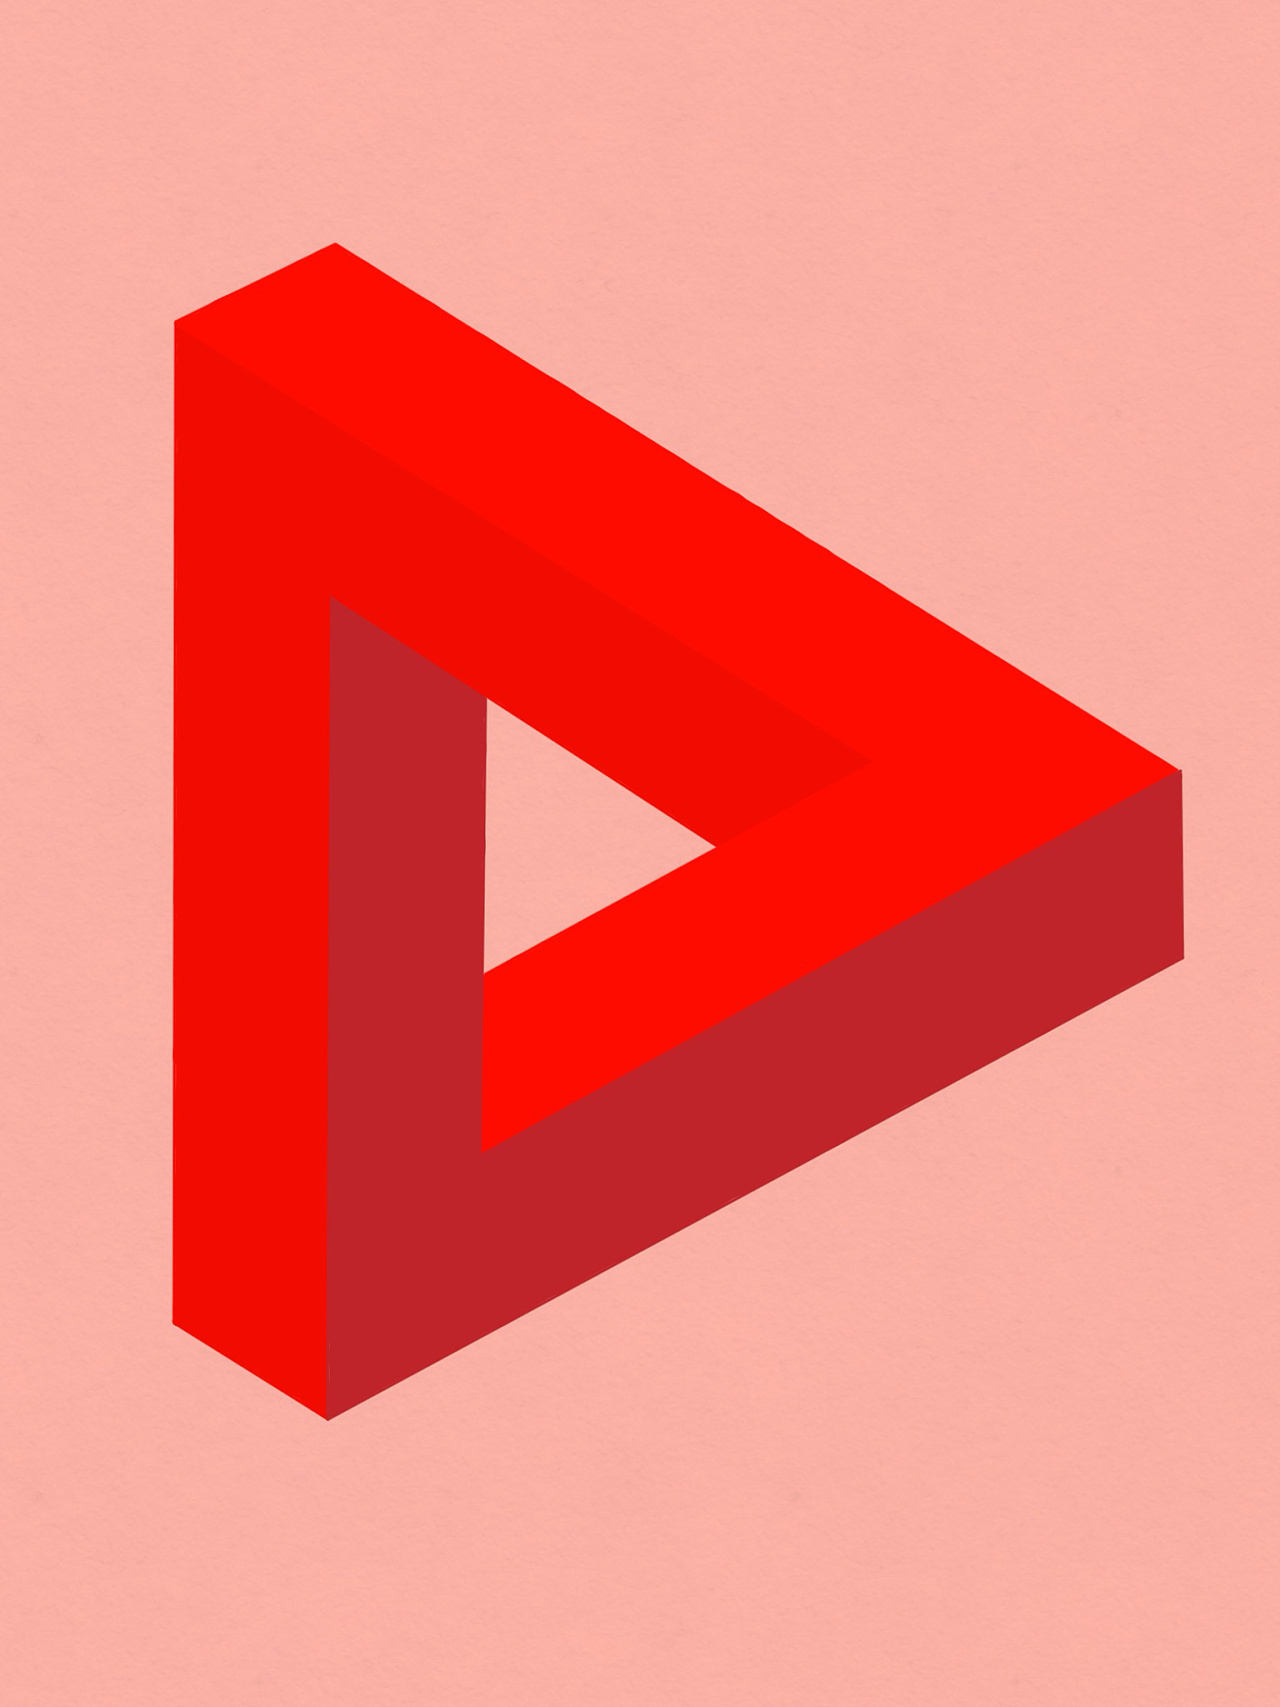 游戏关卡灵感来源:潘洛斯三角形楼阁为潘洛斯三角形组合设计而成